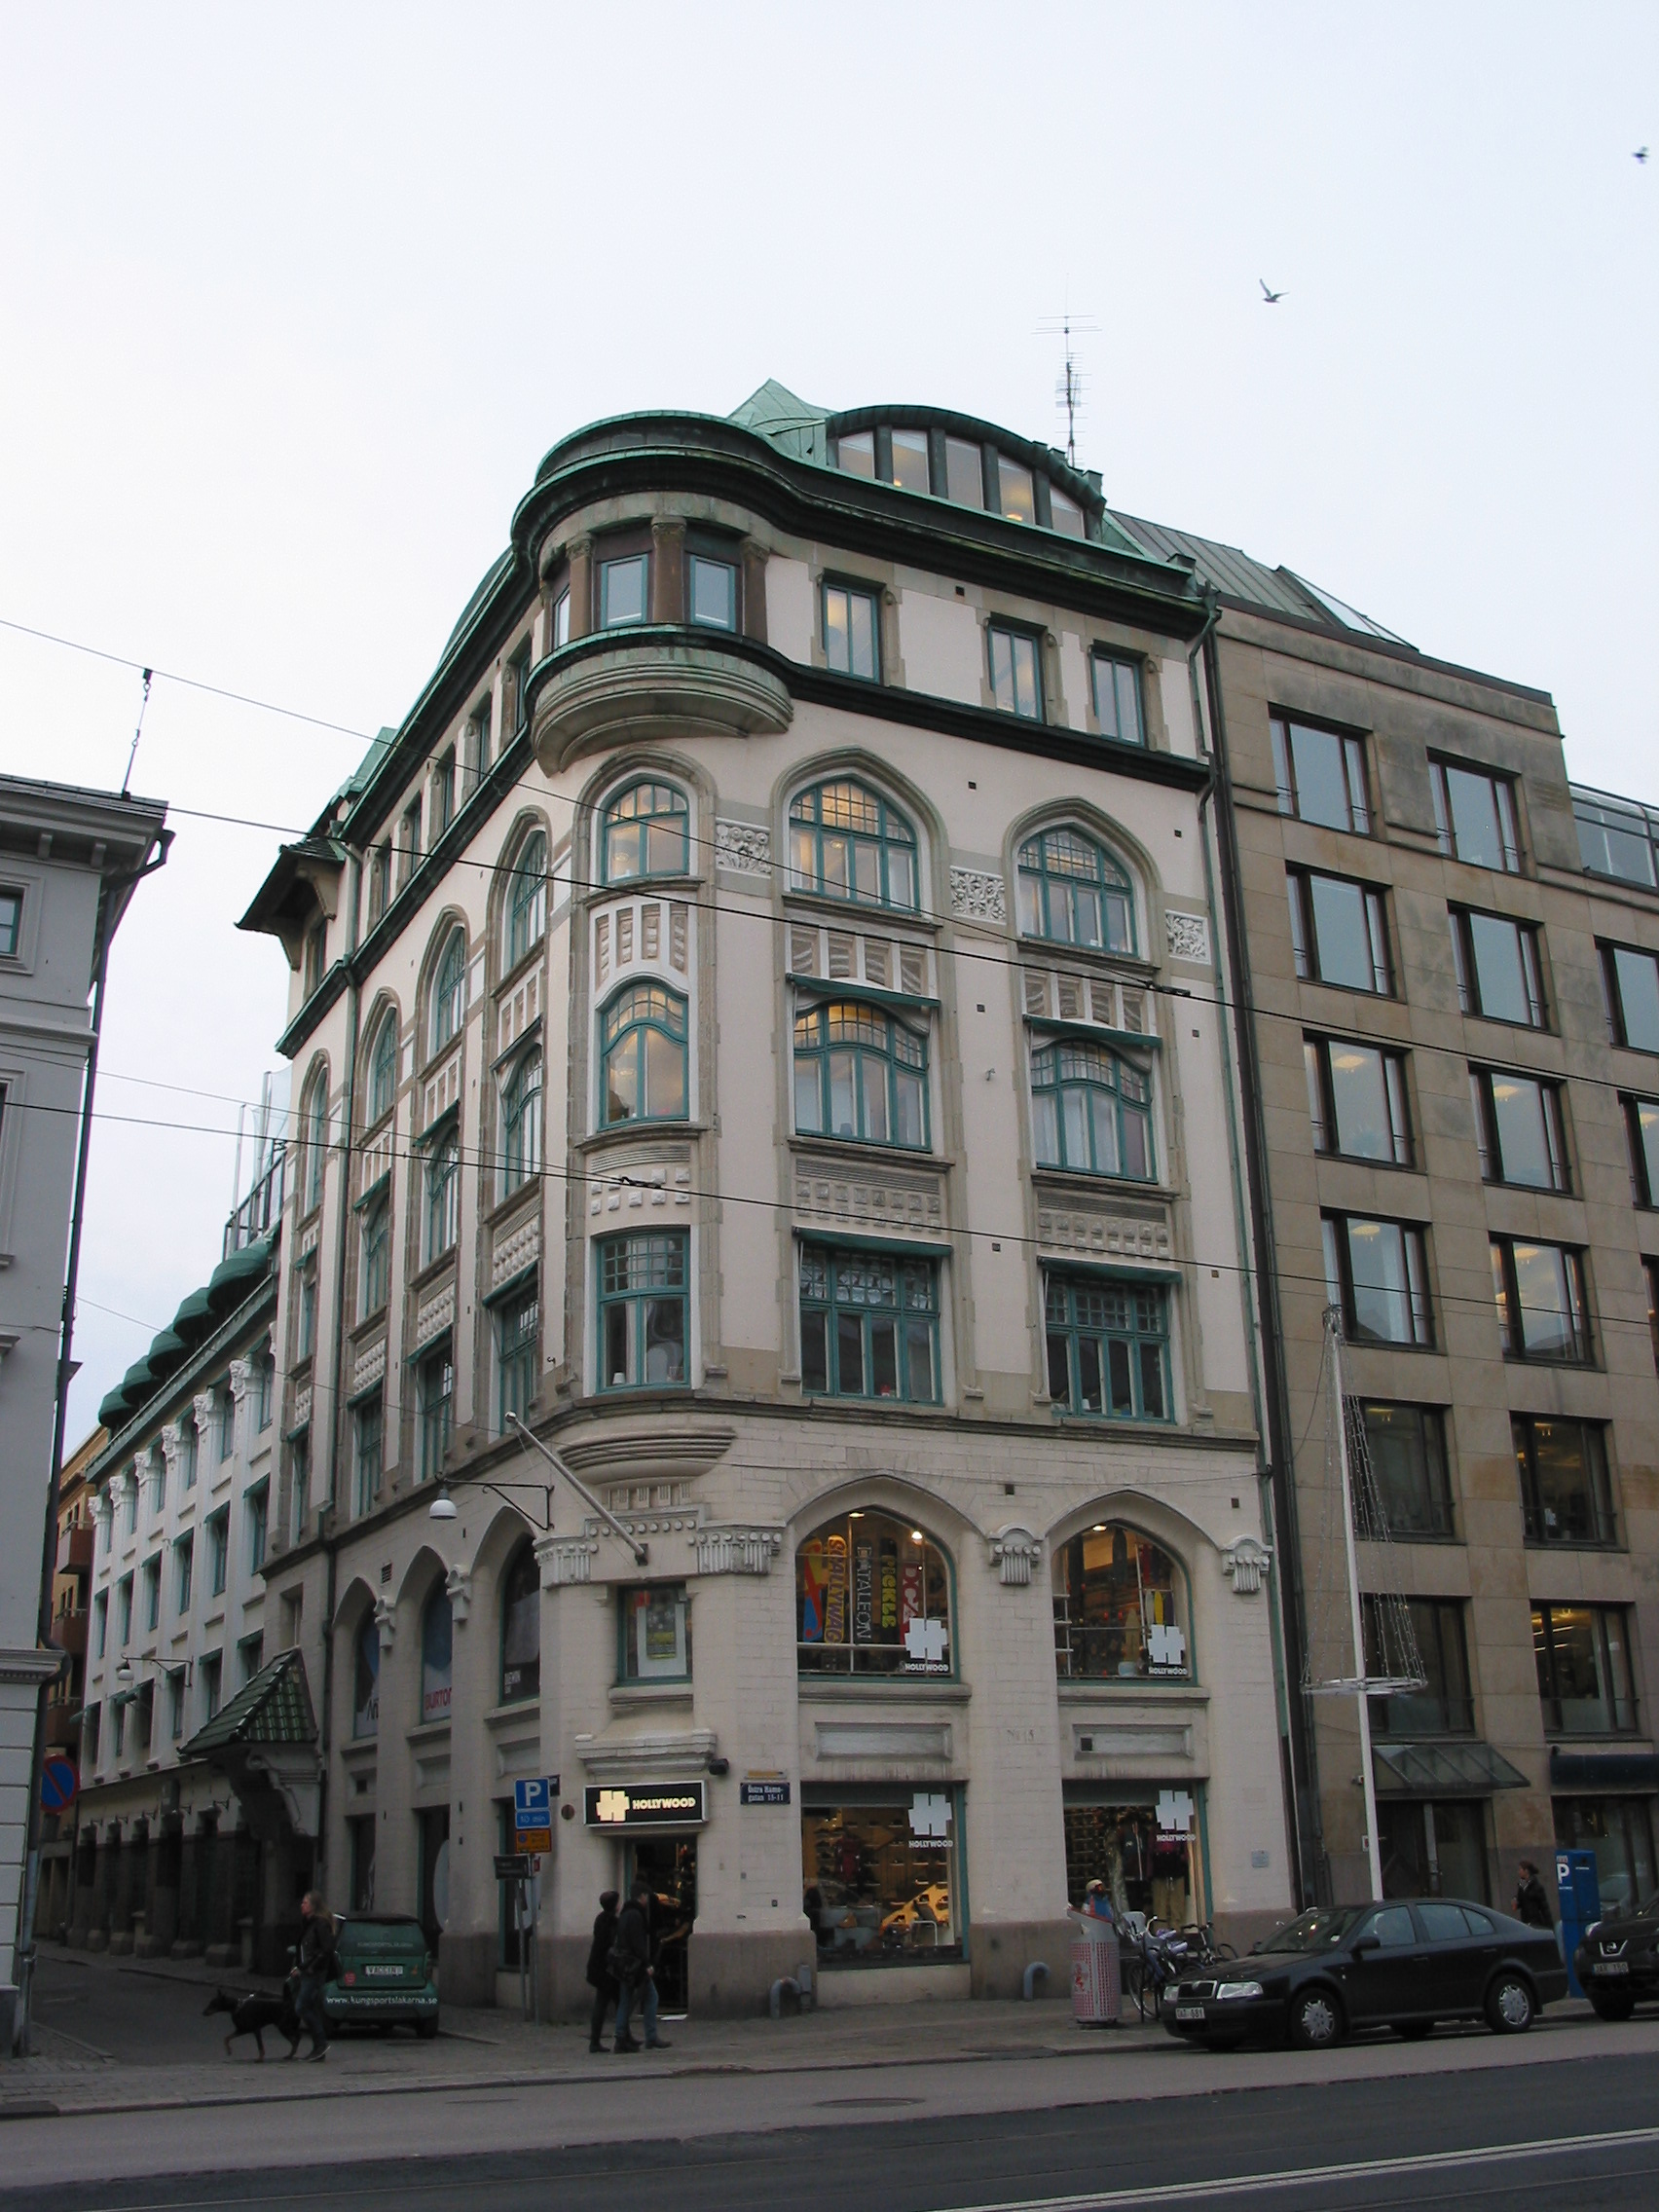 Kontorshus med lager från 1906, efter ritningar av Göteborgsarkitekterna Zetterström & Jonsson. Jugendstilen är påtaglig med välvda smårutsindelade fönster och böljande fönsterposter.